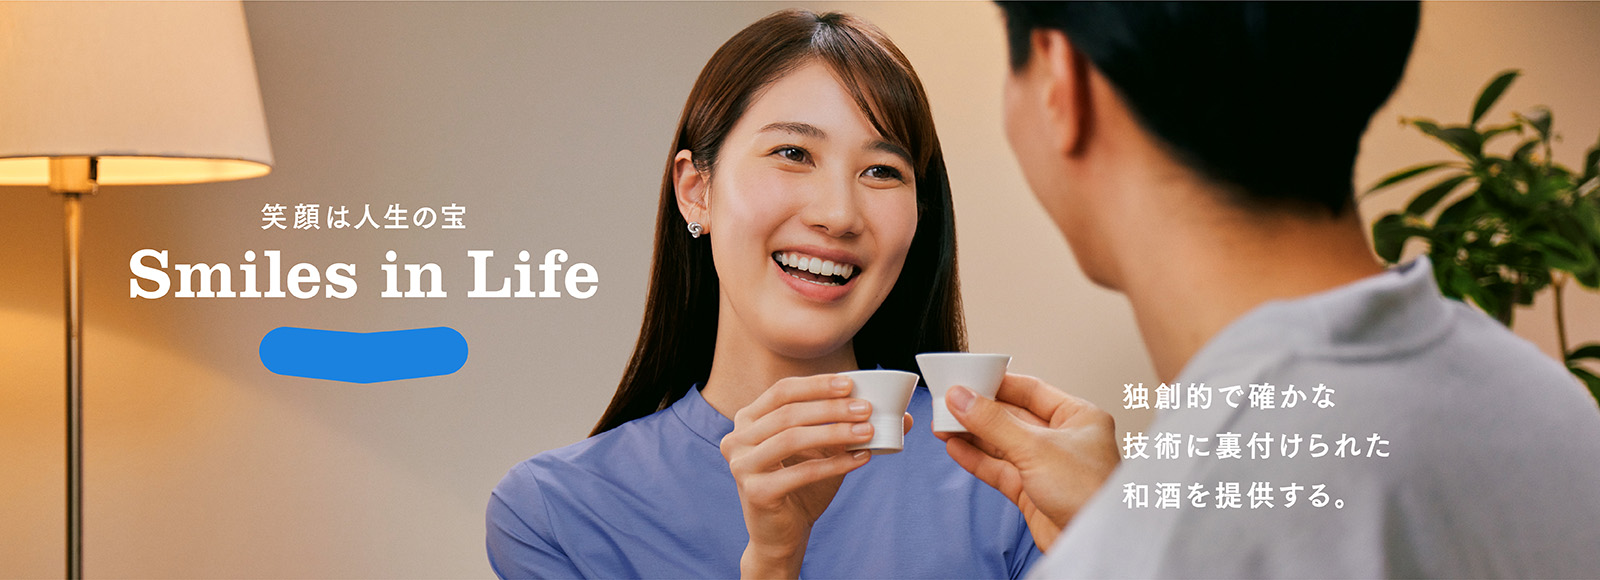 笑顔は人生の宝 Smile in Life 独創的で確かな技術に裏付けられた和酒を提供する。